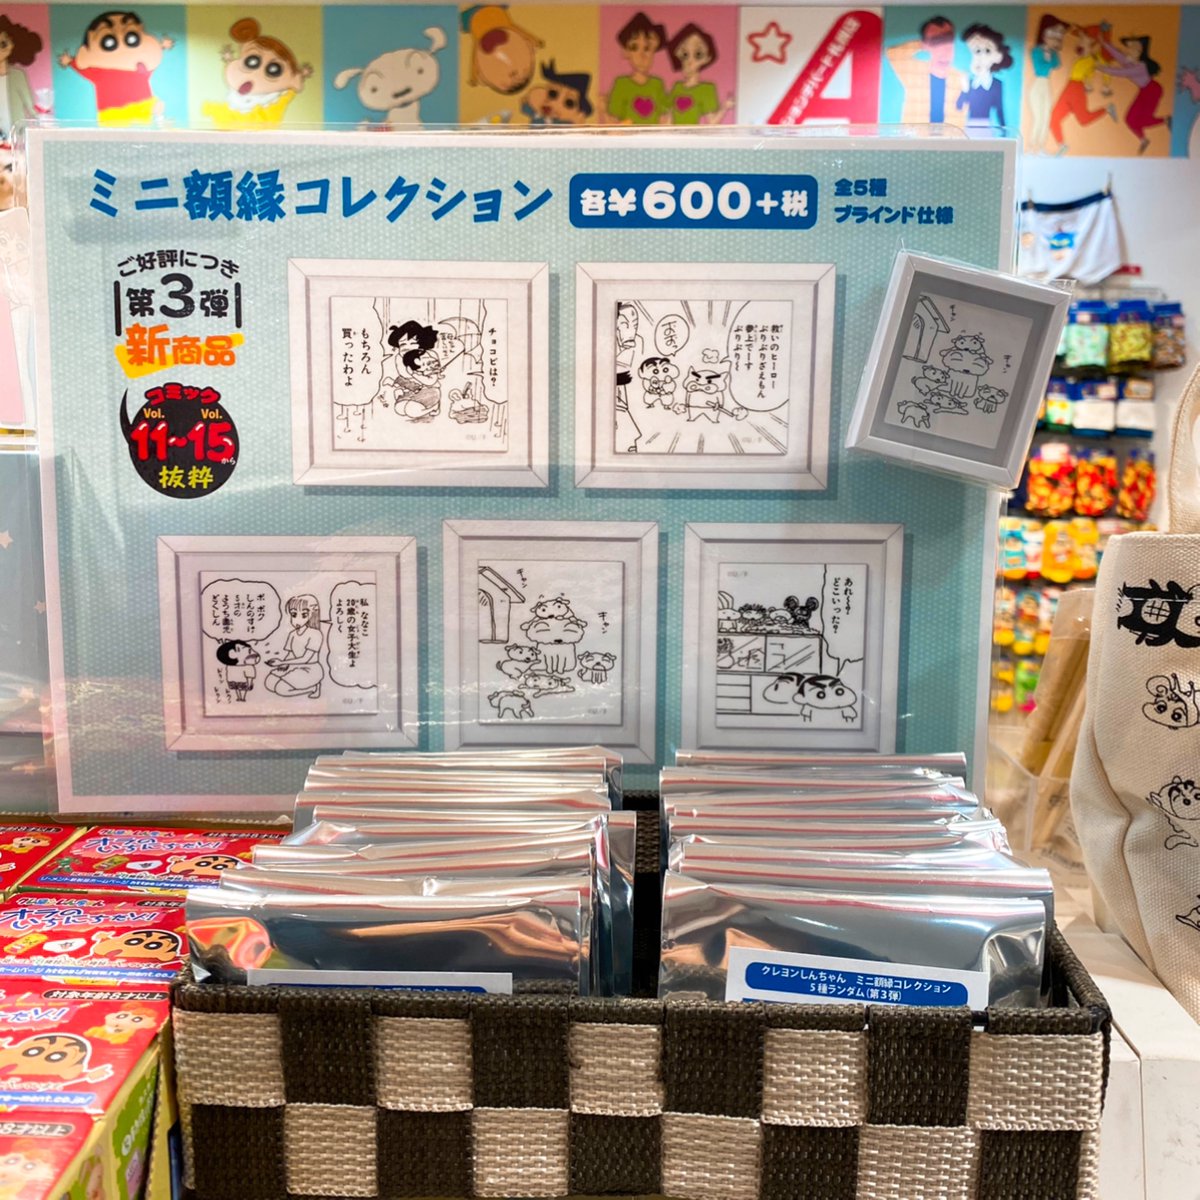 公式 クレヨンしんちゃんオフィシャルショップ アクションデパート札幌店 crayon sapporo twitter